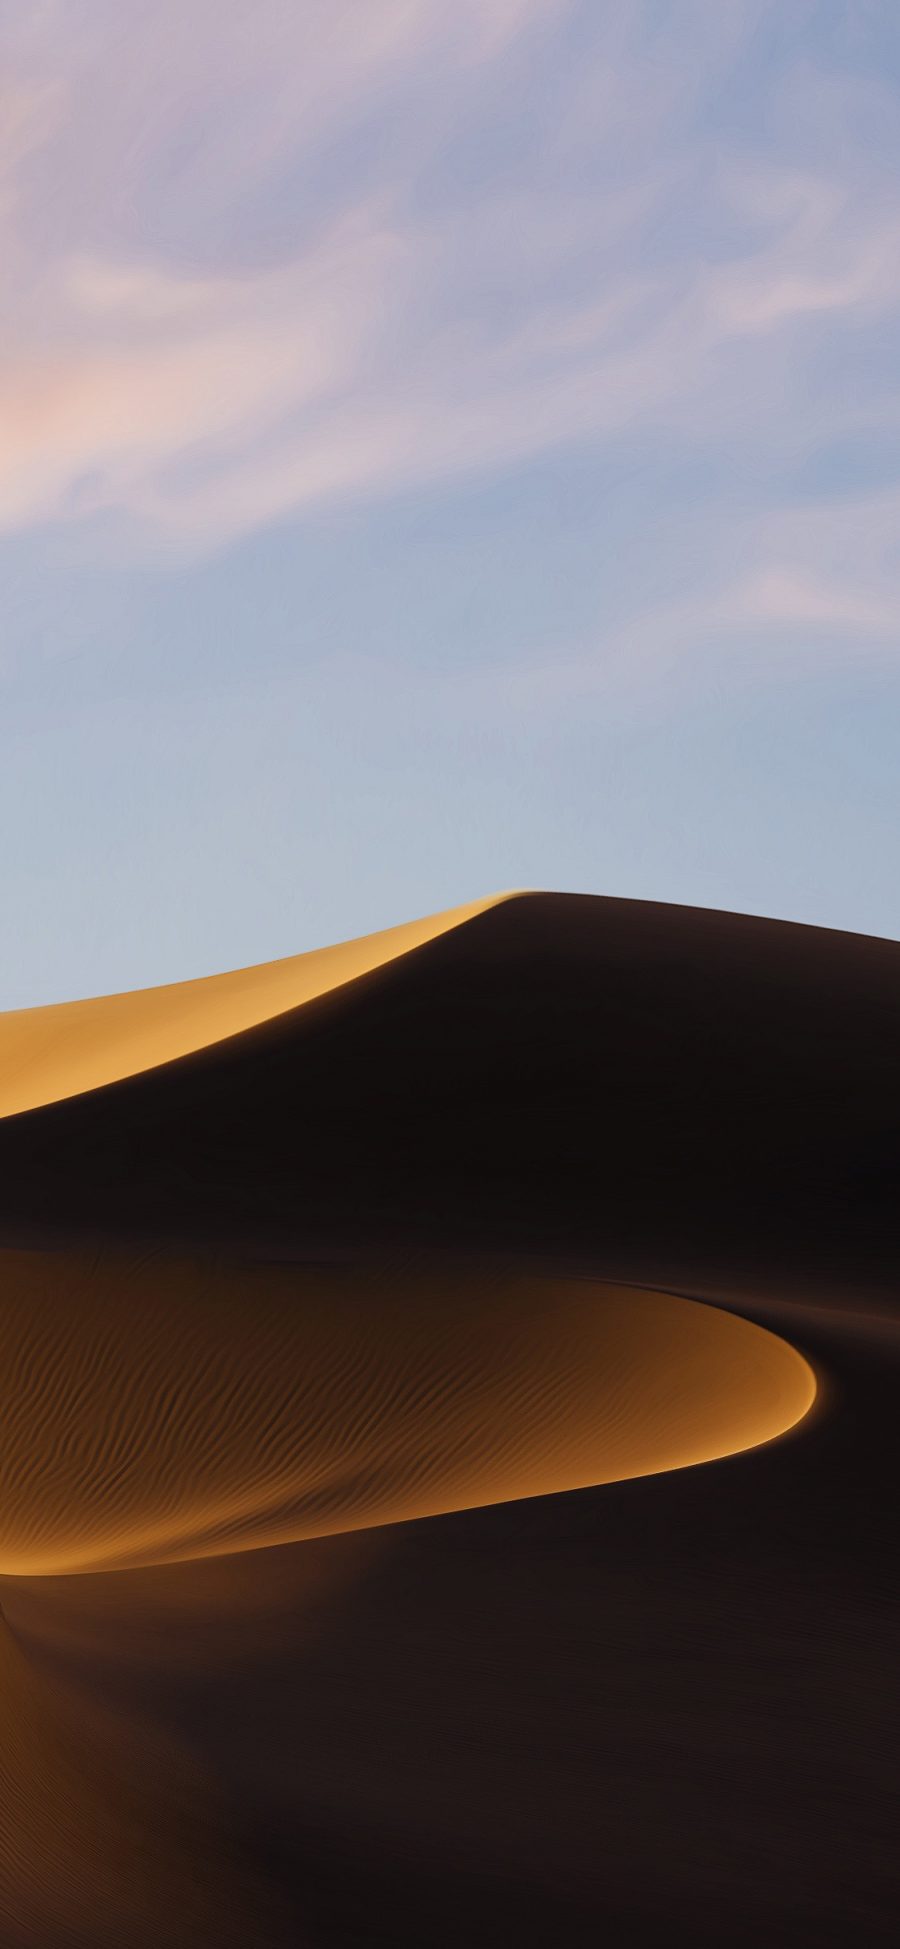 [2436×1125]沙漠 线条 大自然 天空 云彩 苹果手机壁纸图片